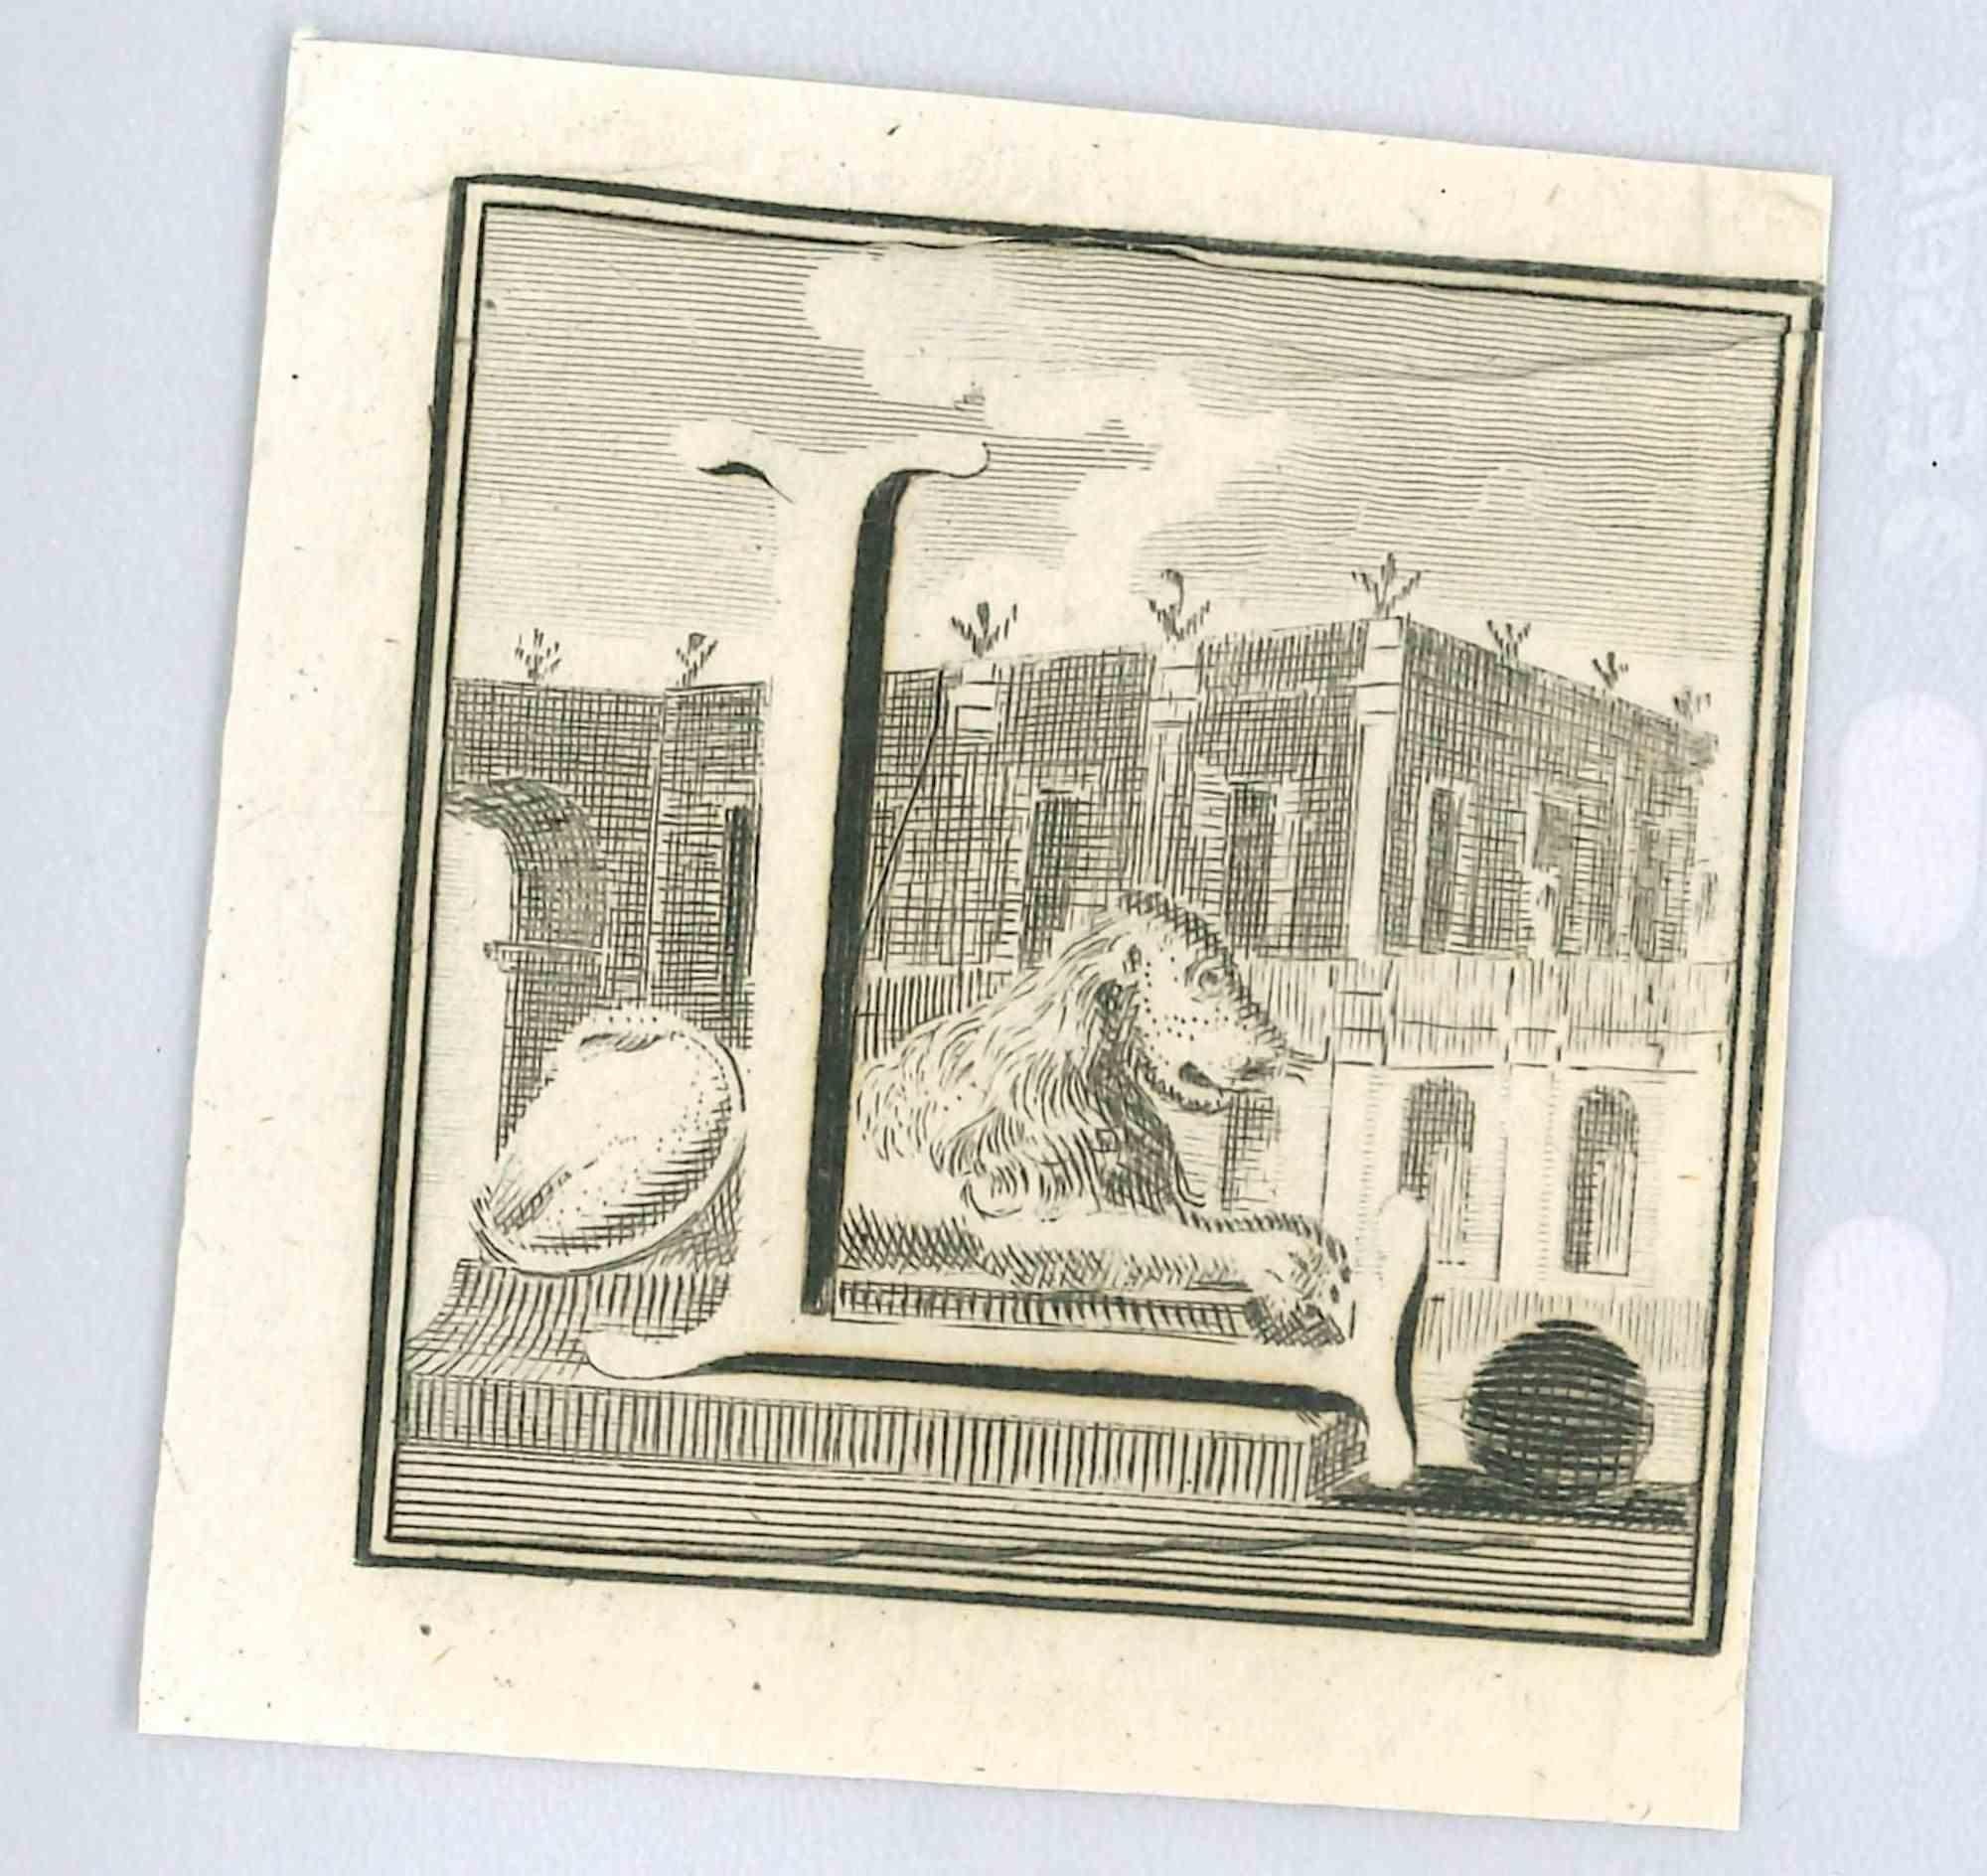 Lettre de l'alphabet L,  de la série "Antiquités d'Herculanum", est une gravure sur papier réalisée par Luigi Vanvitelli au 18ème siècle.

Bon état avec de légers plis.

La gravure appartient à la suite d'estampes "Antiquités d'Herculanum exposées"